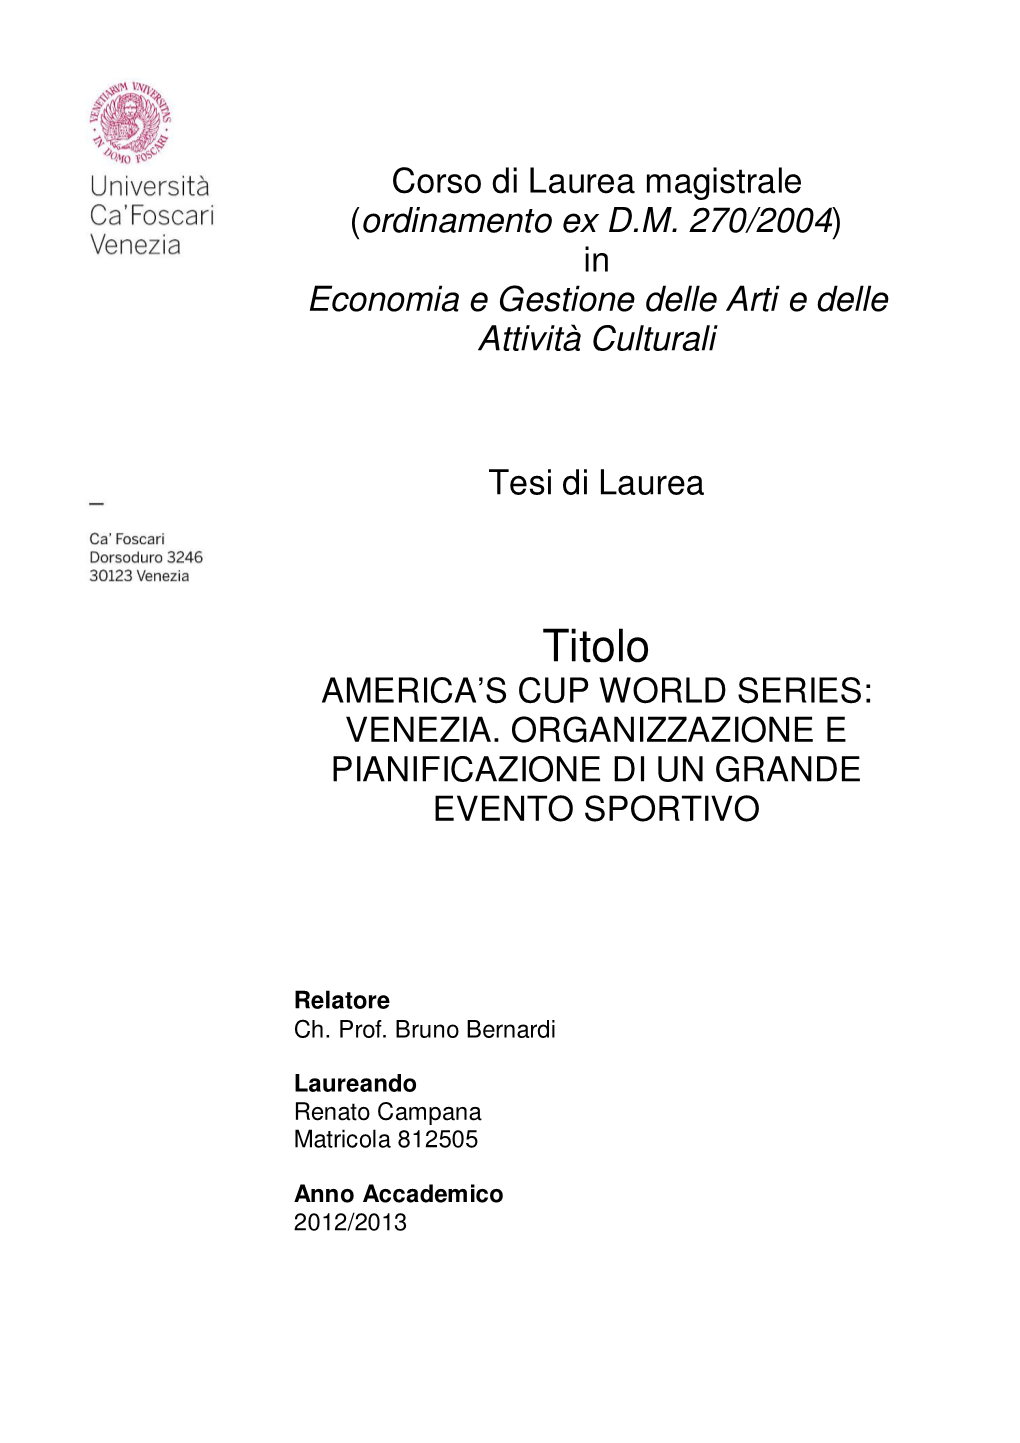 America's Cup World Series: Venezia. Organizzazione E Pianificazione Di Un Grande Evento Sportivo